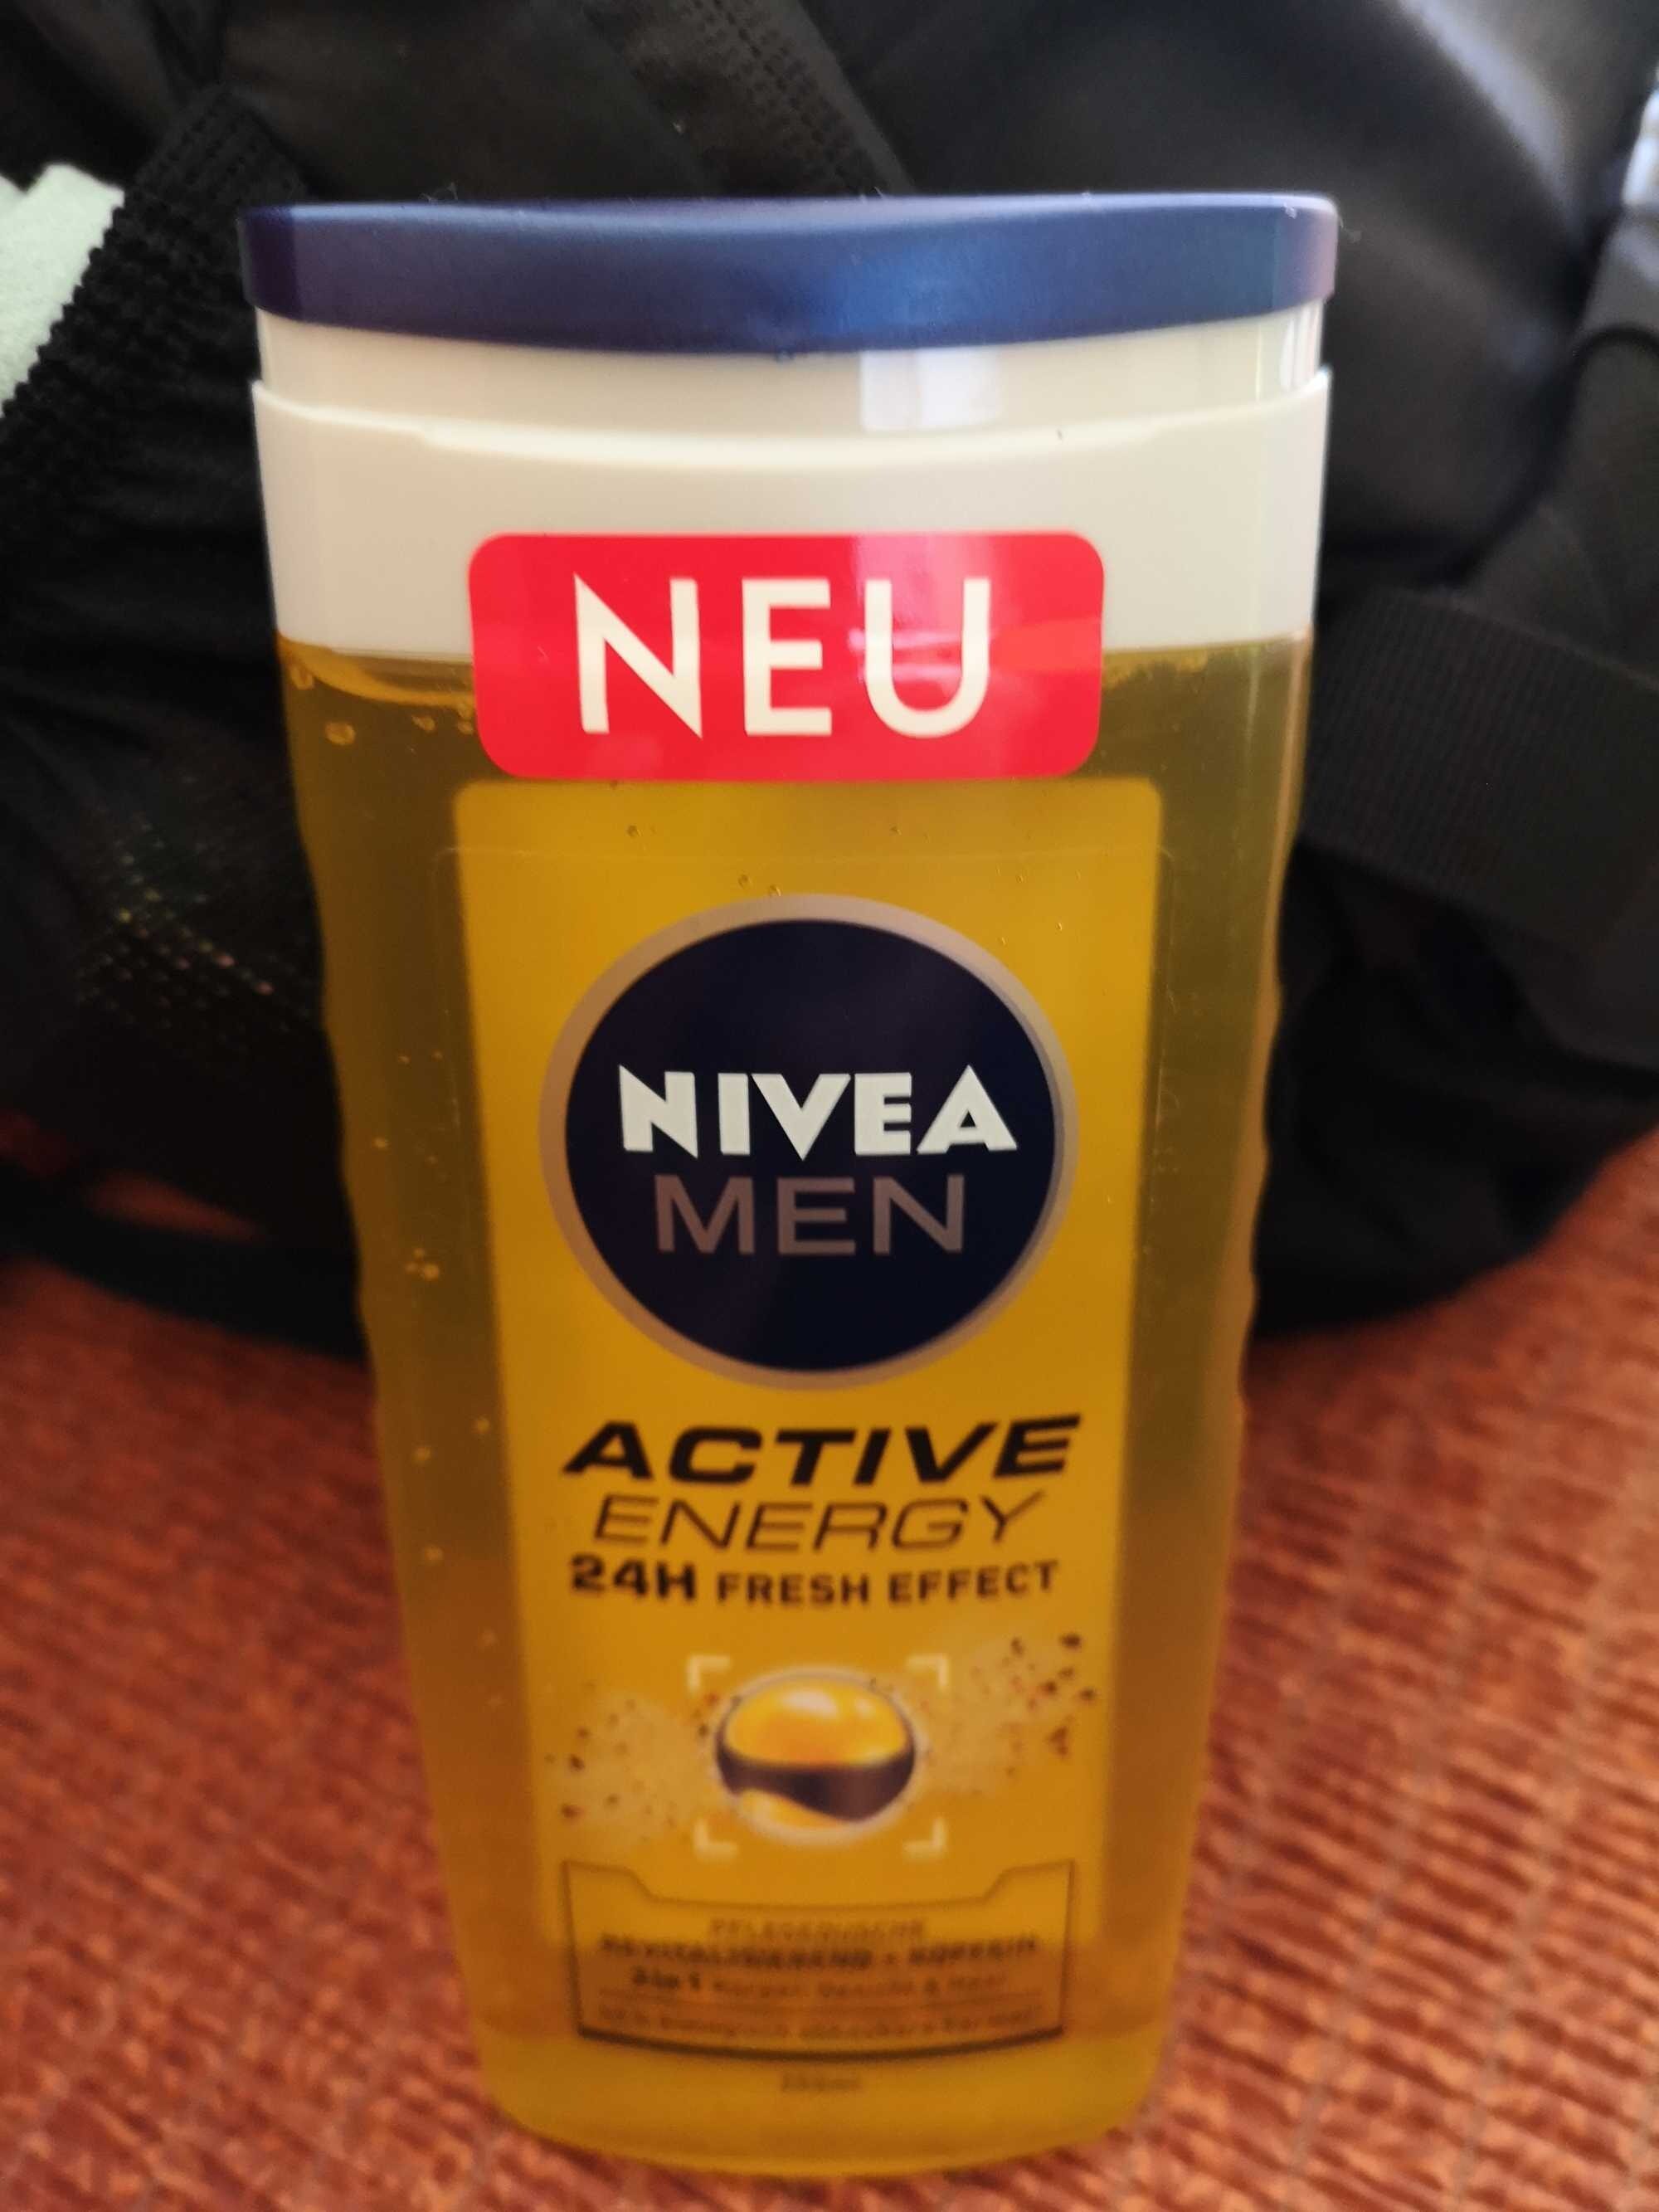 Nivea Men Active Energy 24h Fresh Effect - Produto - de